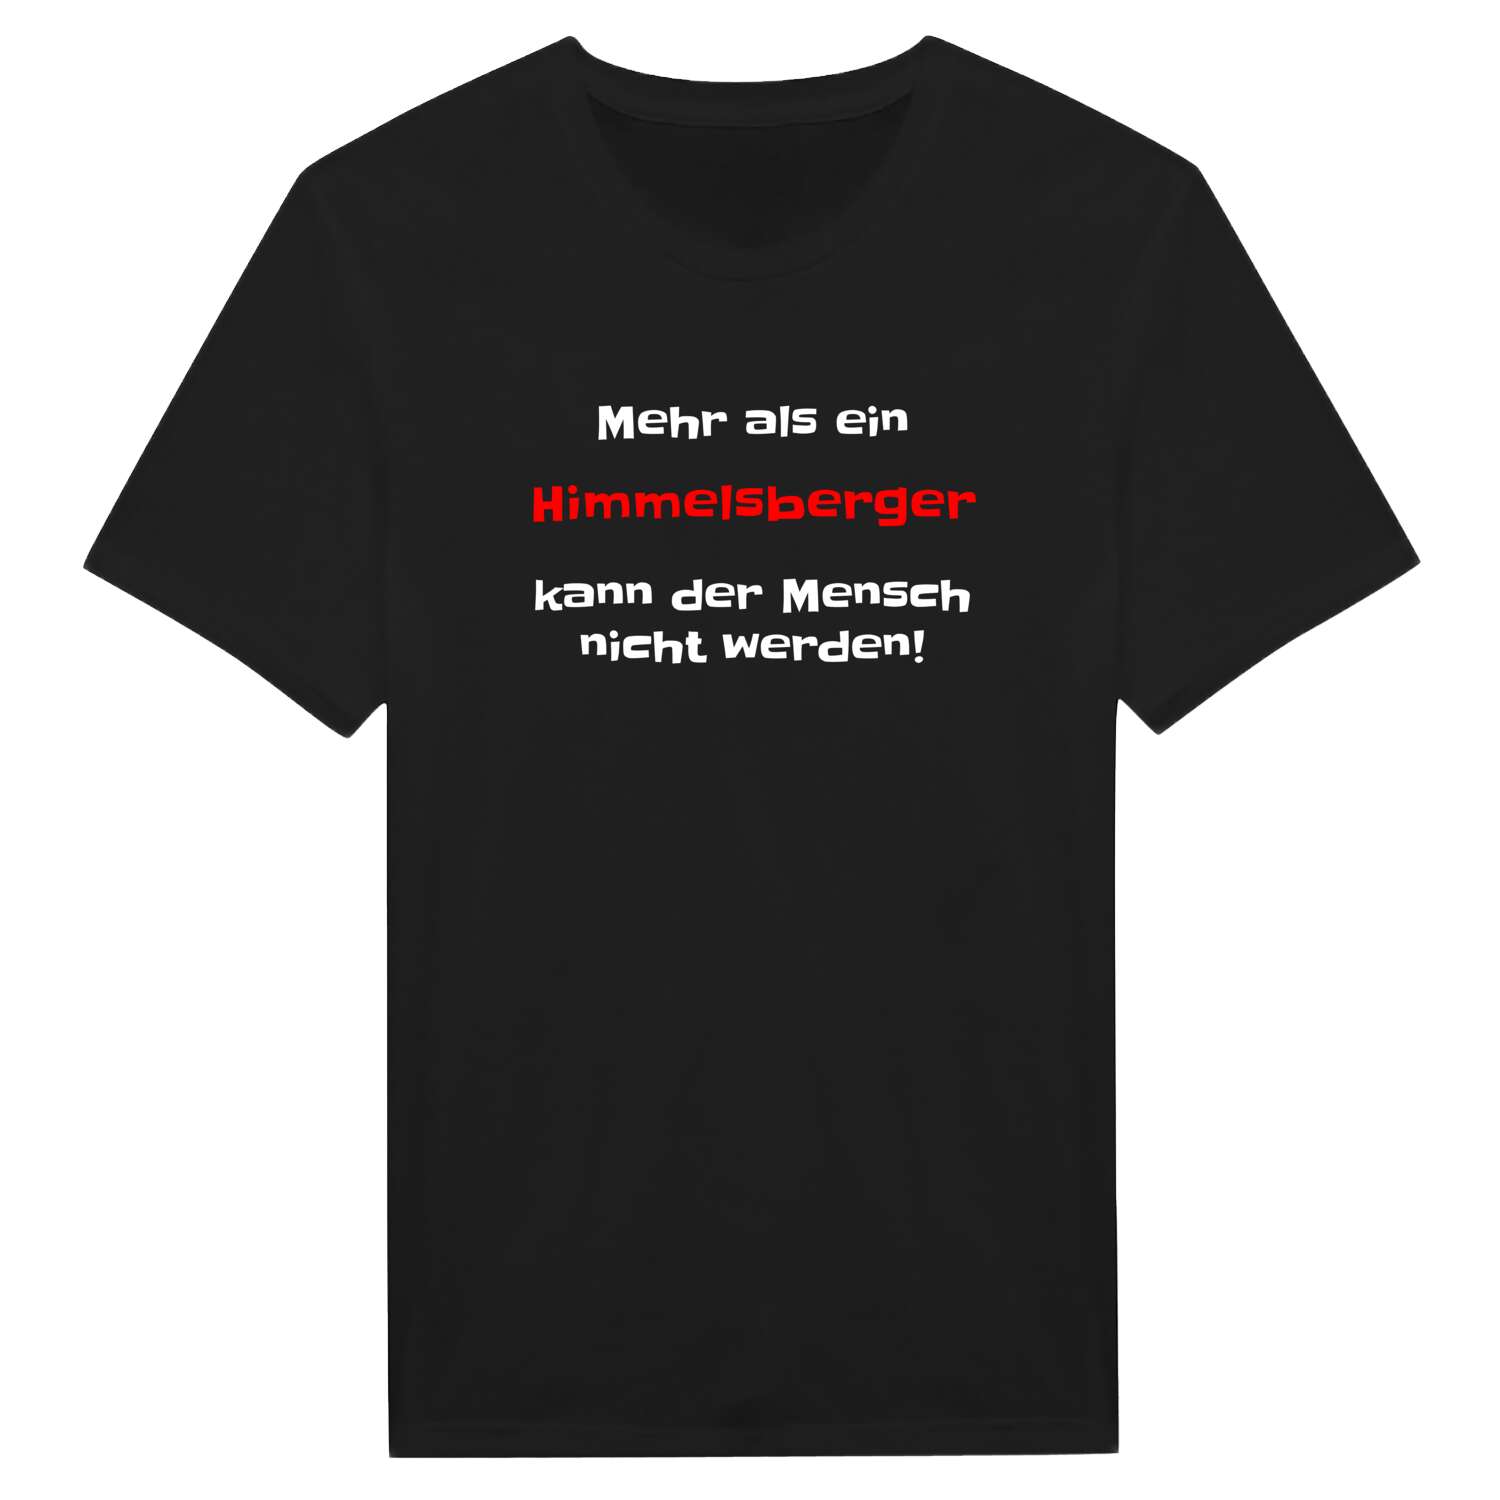 Himmelsberg T-Shirt »Mehr als ein«